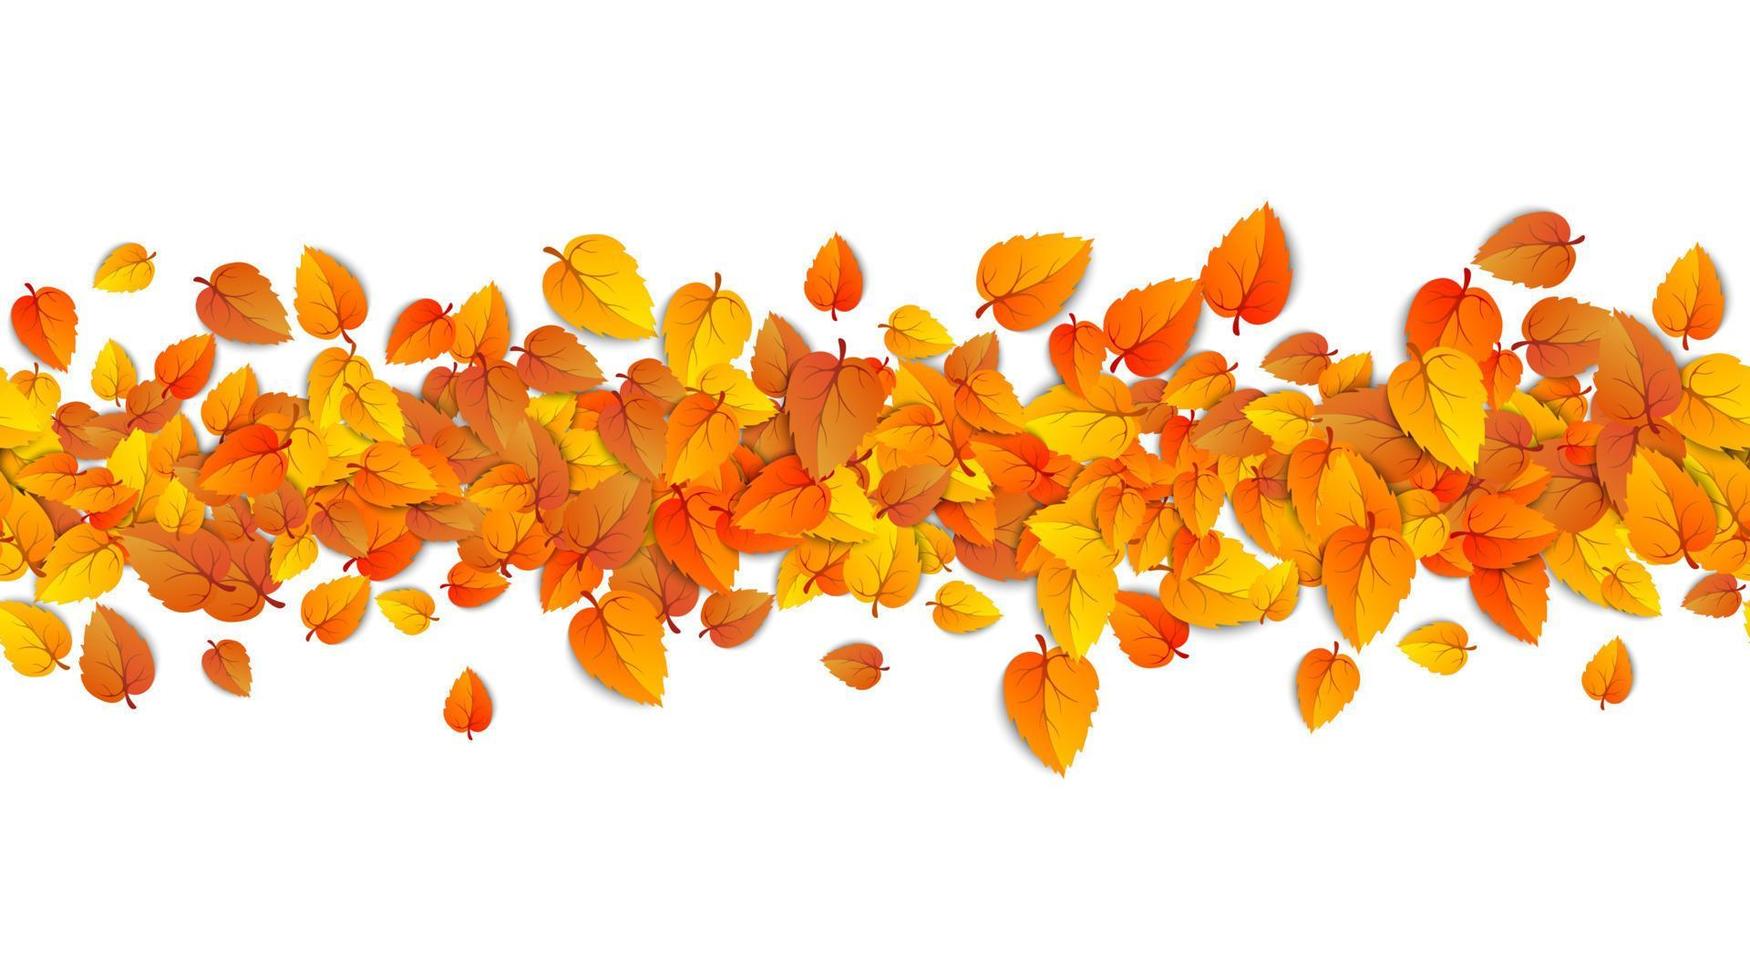 bannière horizontale de feuilles d'automne sans soudure isolée sur fond blanc. modèle publicitaire avec feuille d'automne dorée. illustration vectorielle eps10 vecteur